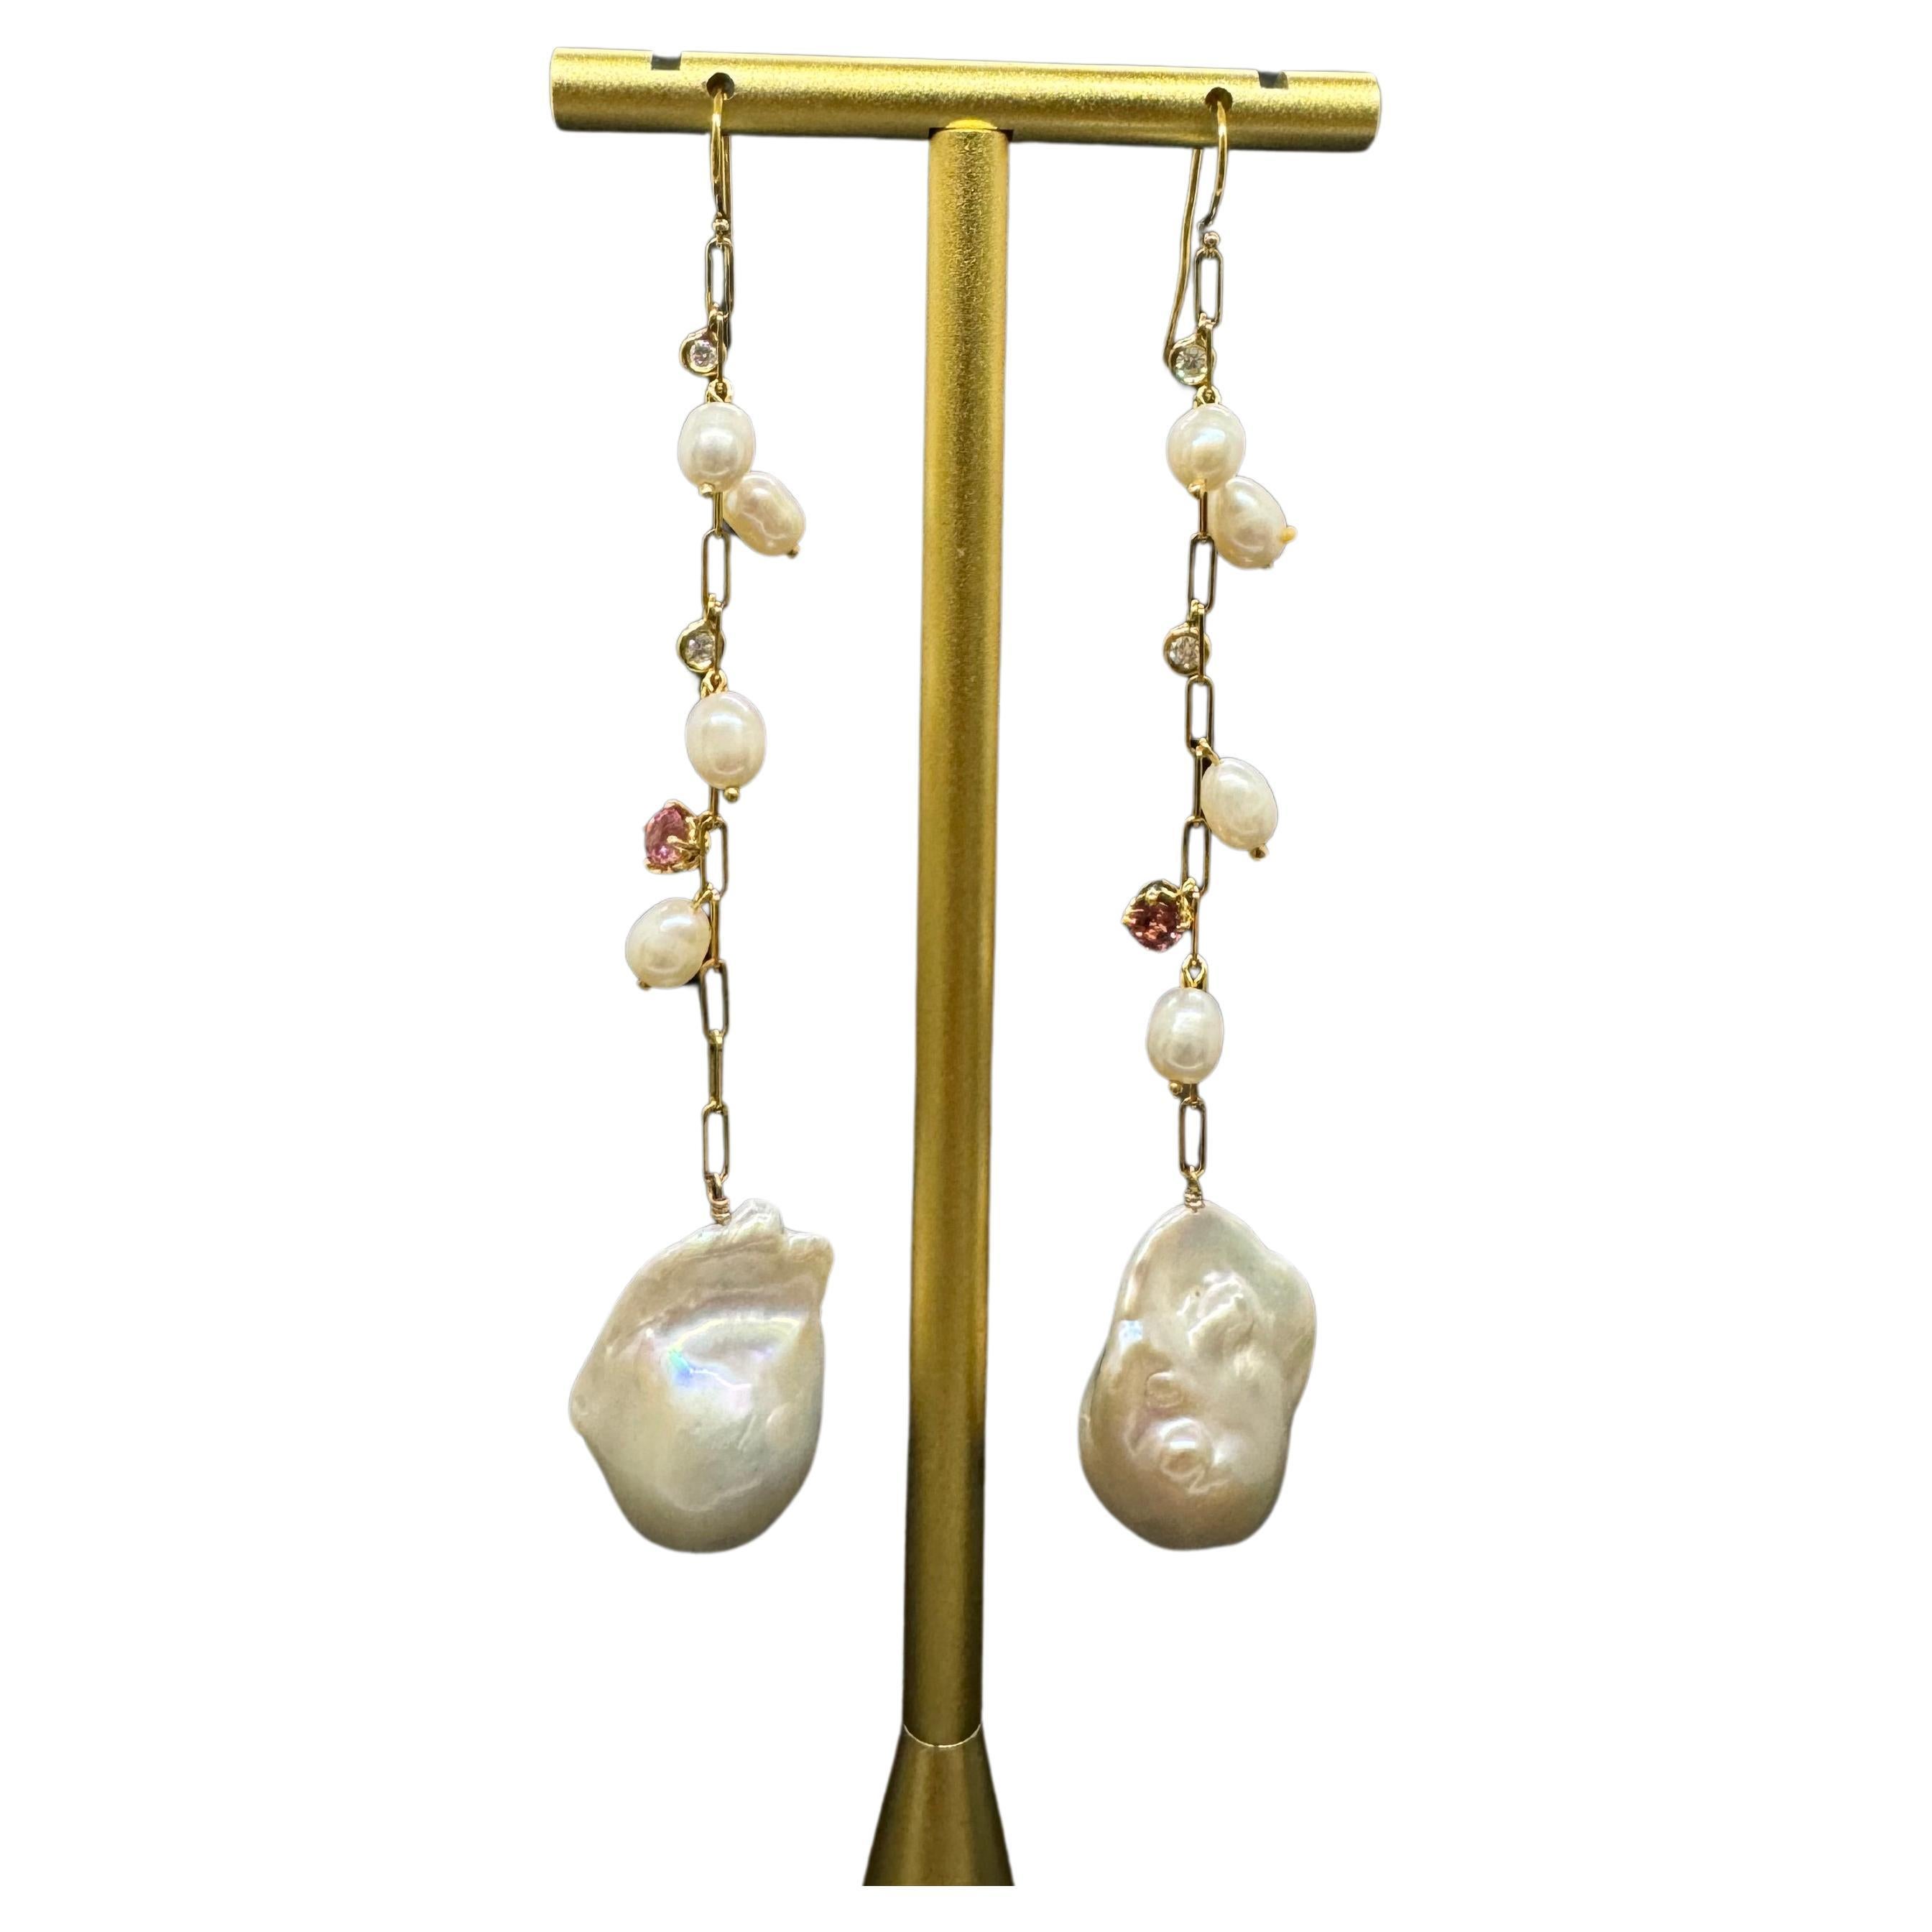 Boucle d'oreille pendante en chaîne A Link Avec perles baroques